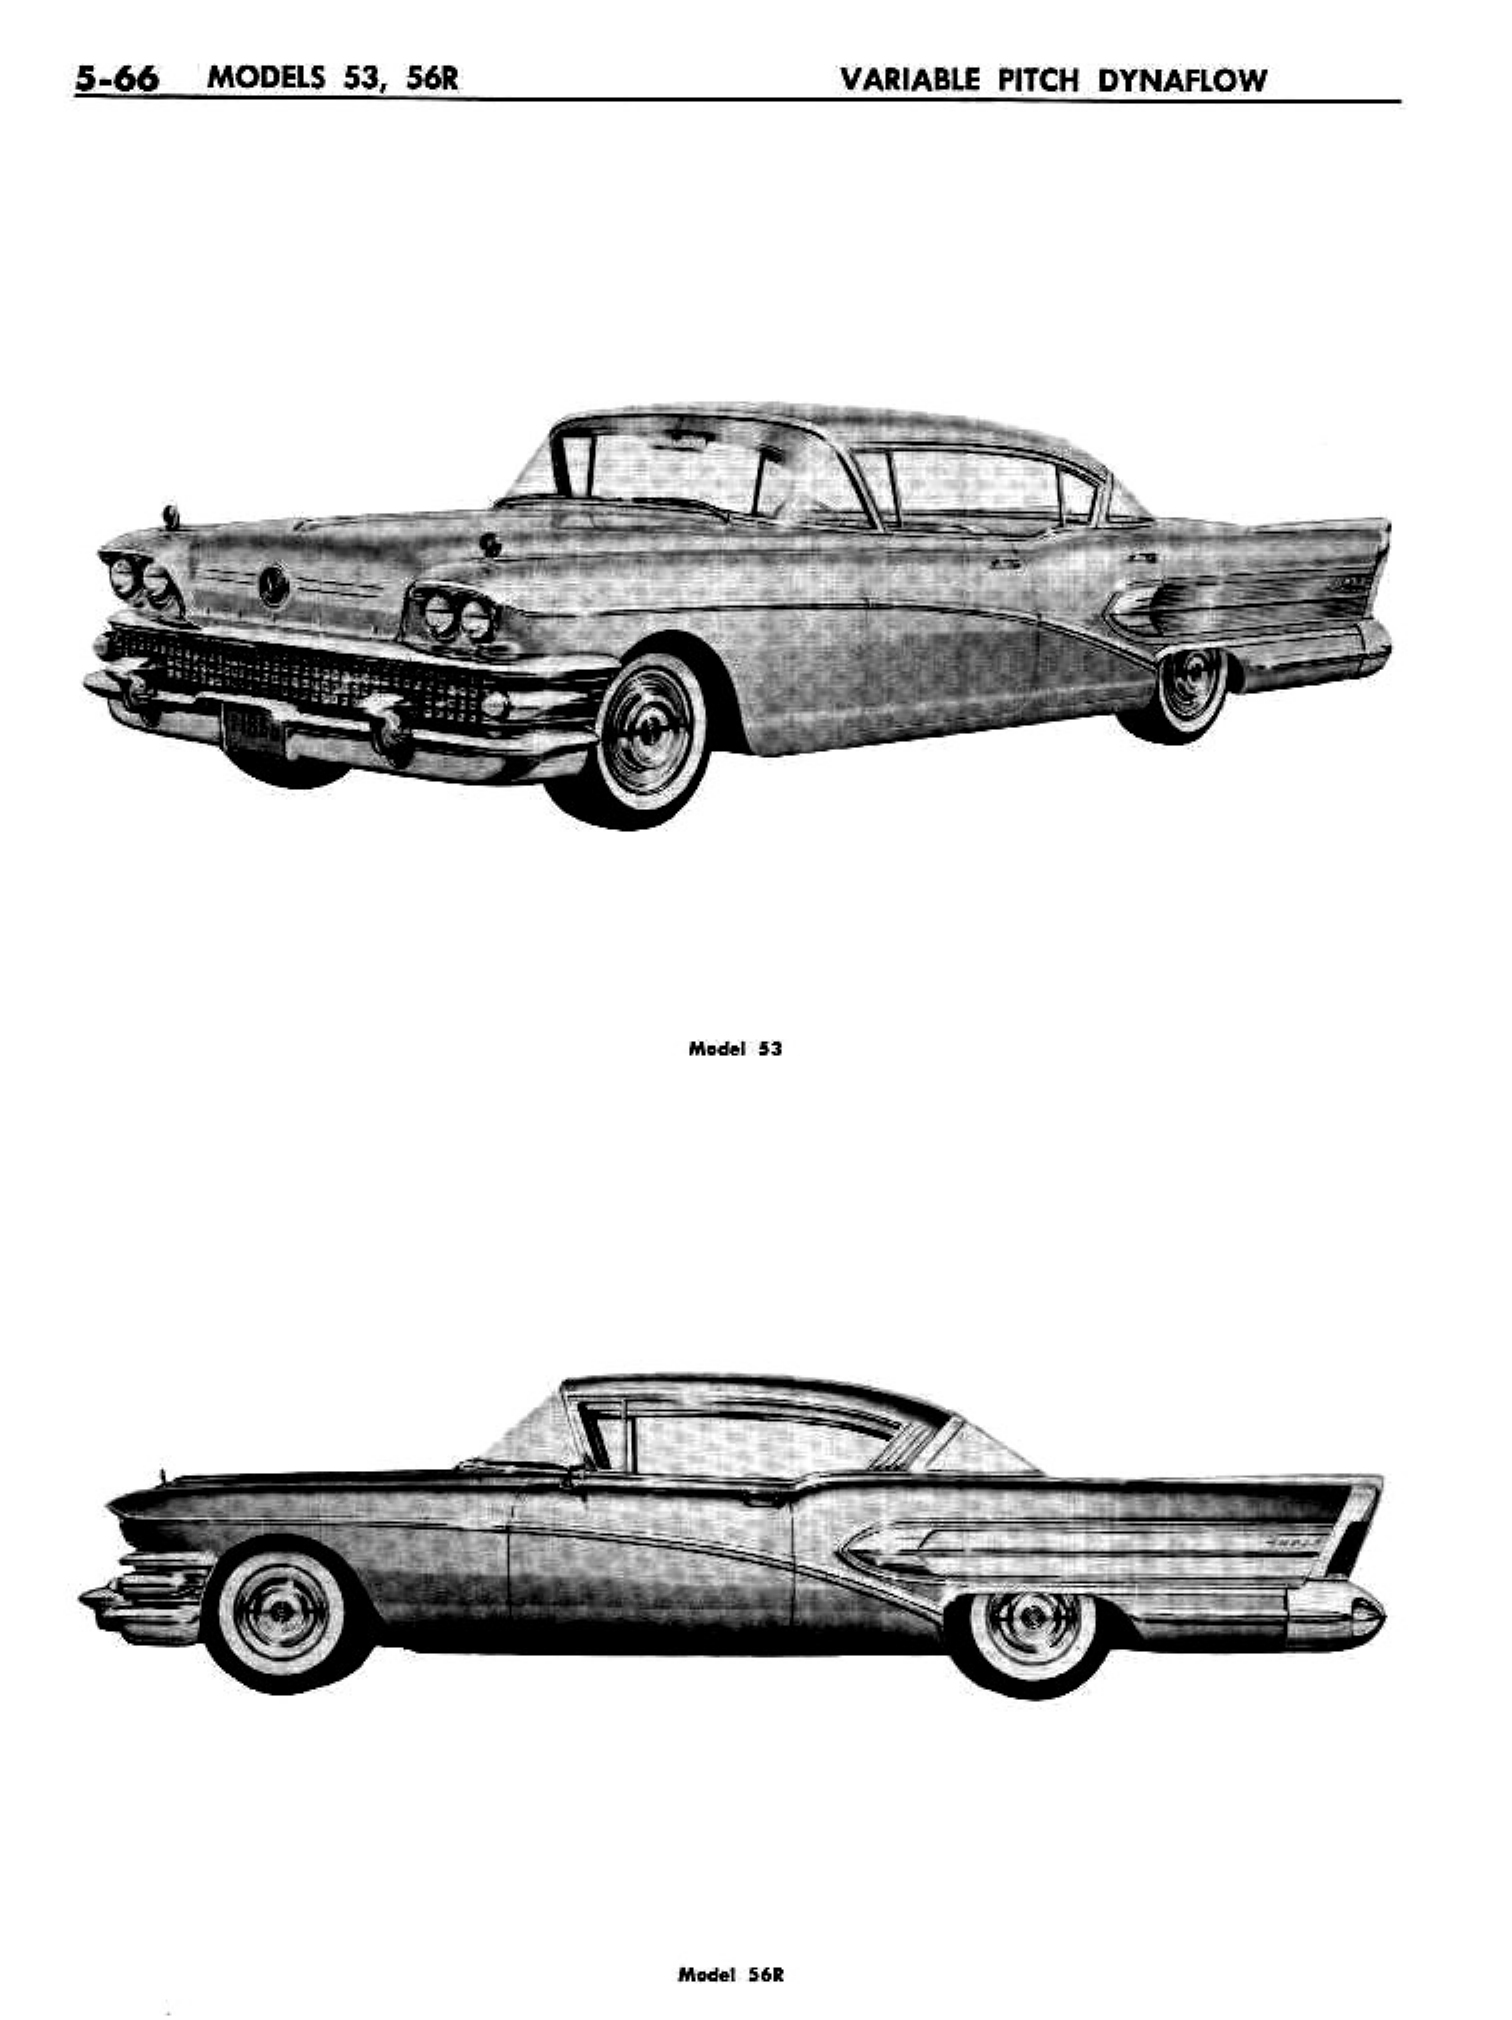 n_06 1958 Buick Shop Manual - Dynaflow_66.jpg